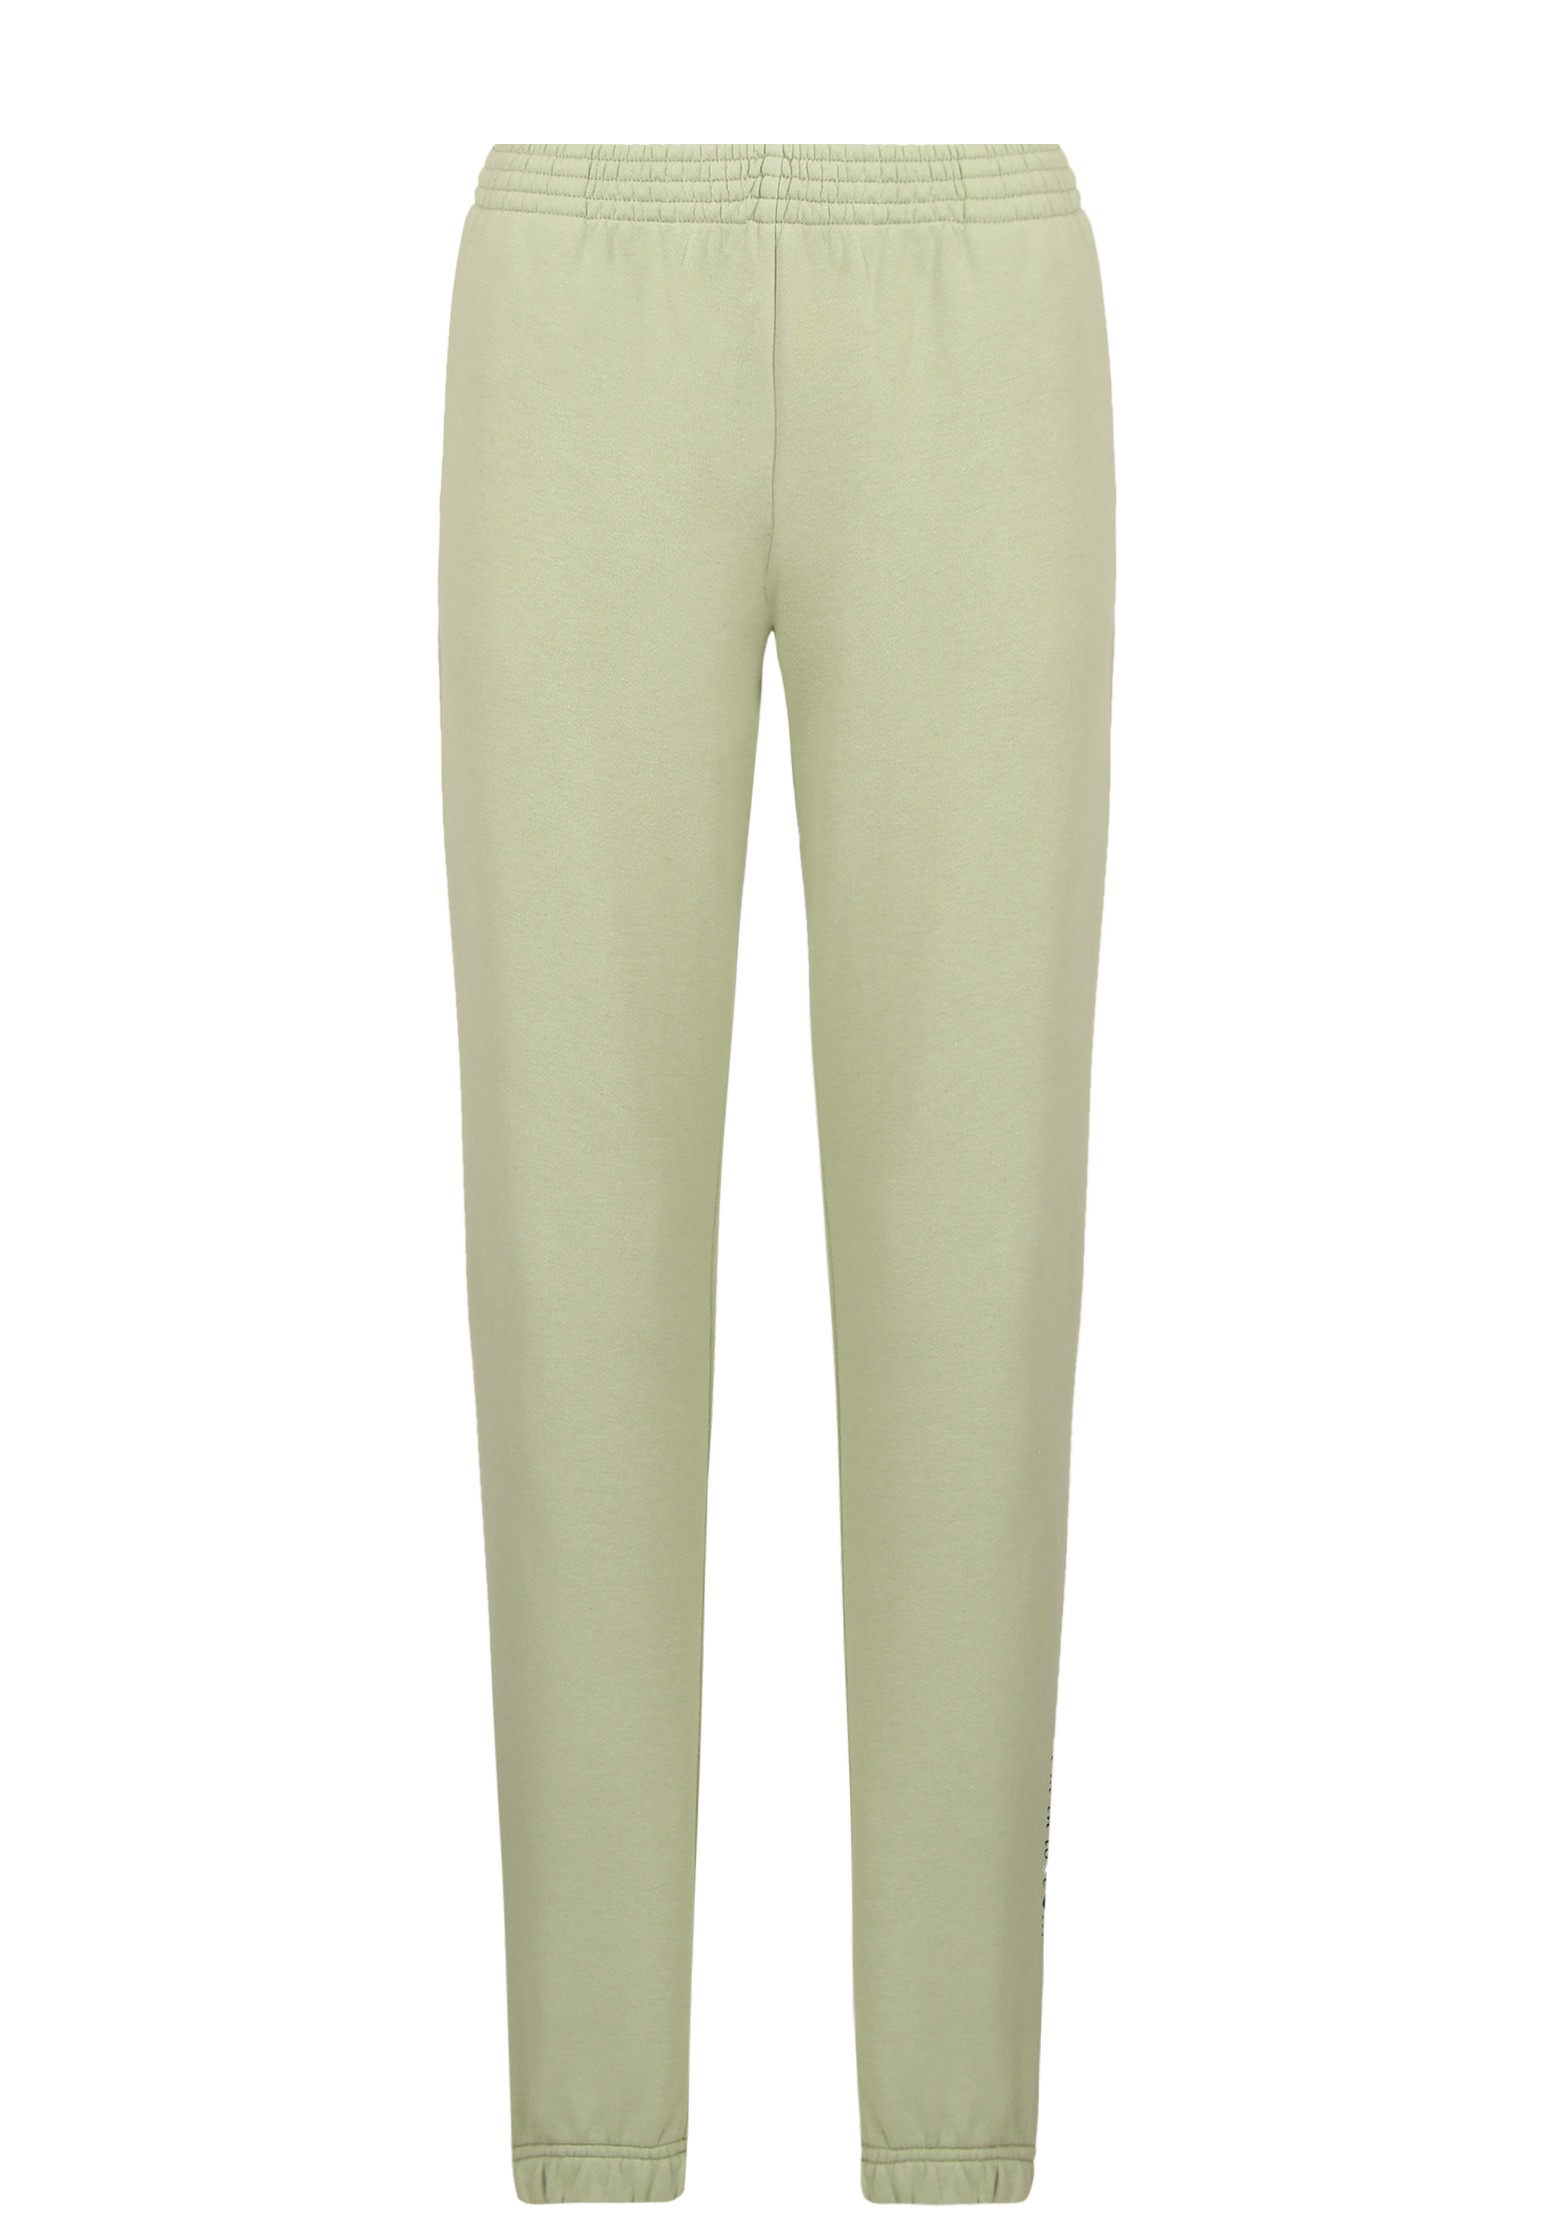 Спортивные брюки женские ELYTS 128053 зеленые M